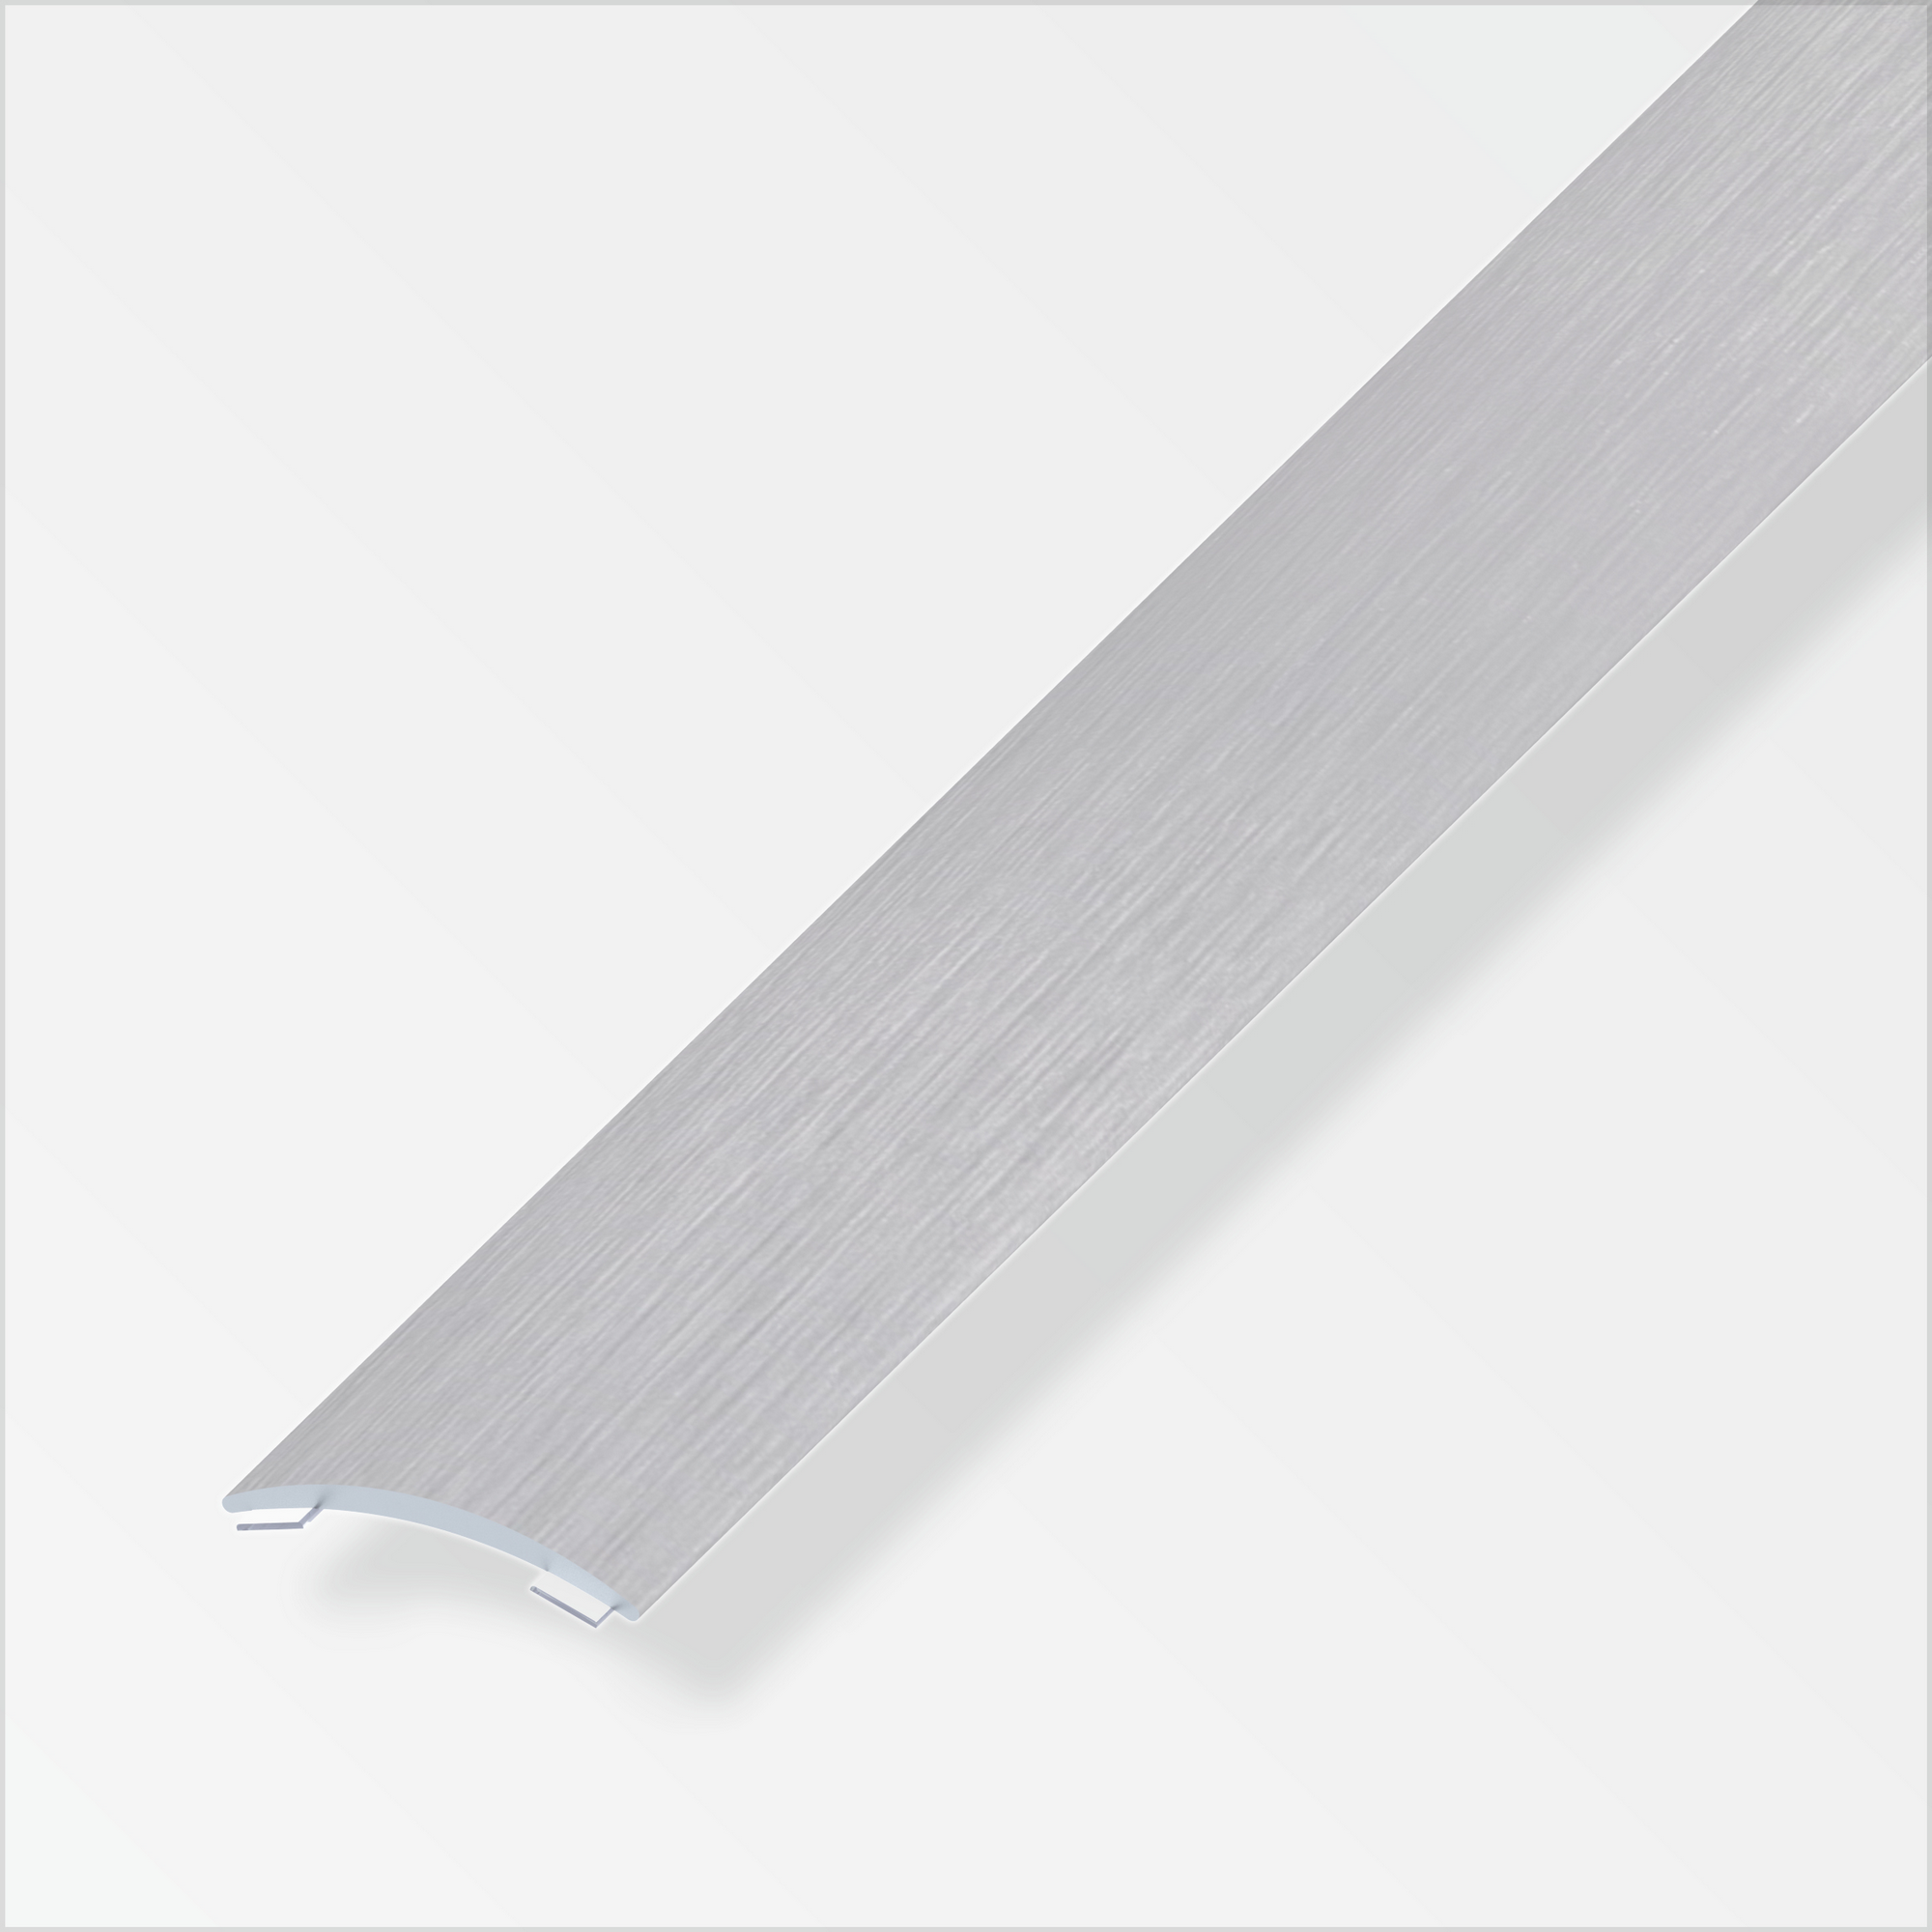 Übergangsprofil grau gebürstet, selbstklebend 1000 x 30 x 5 mm + product picture